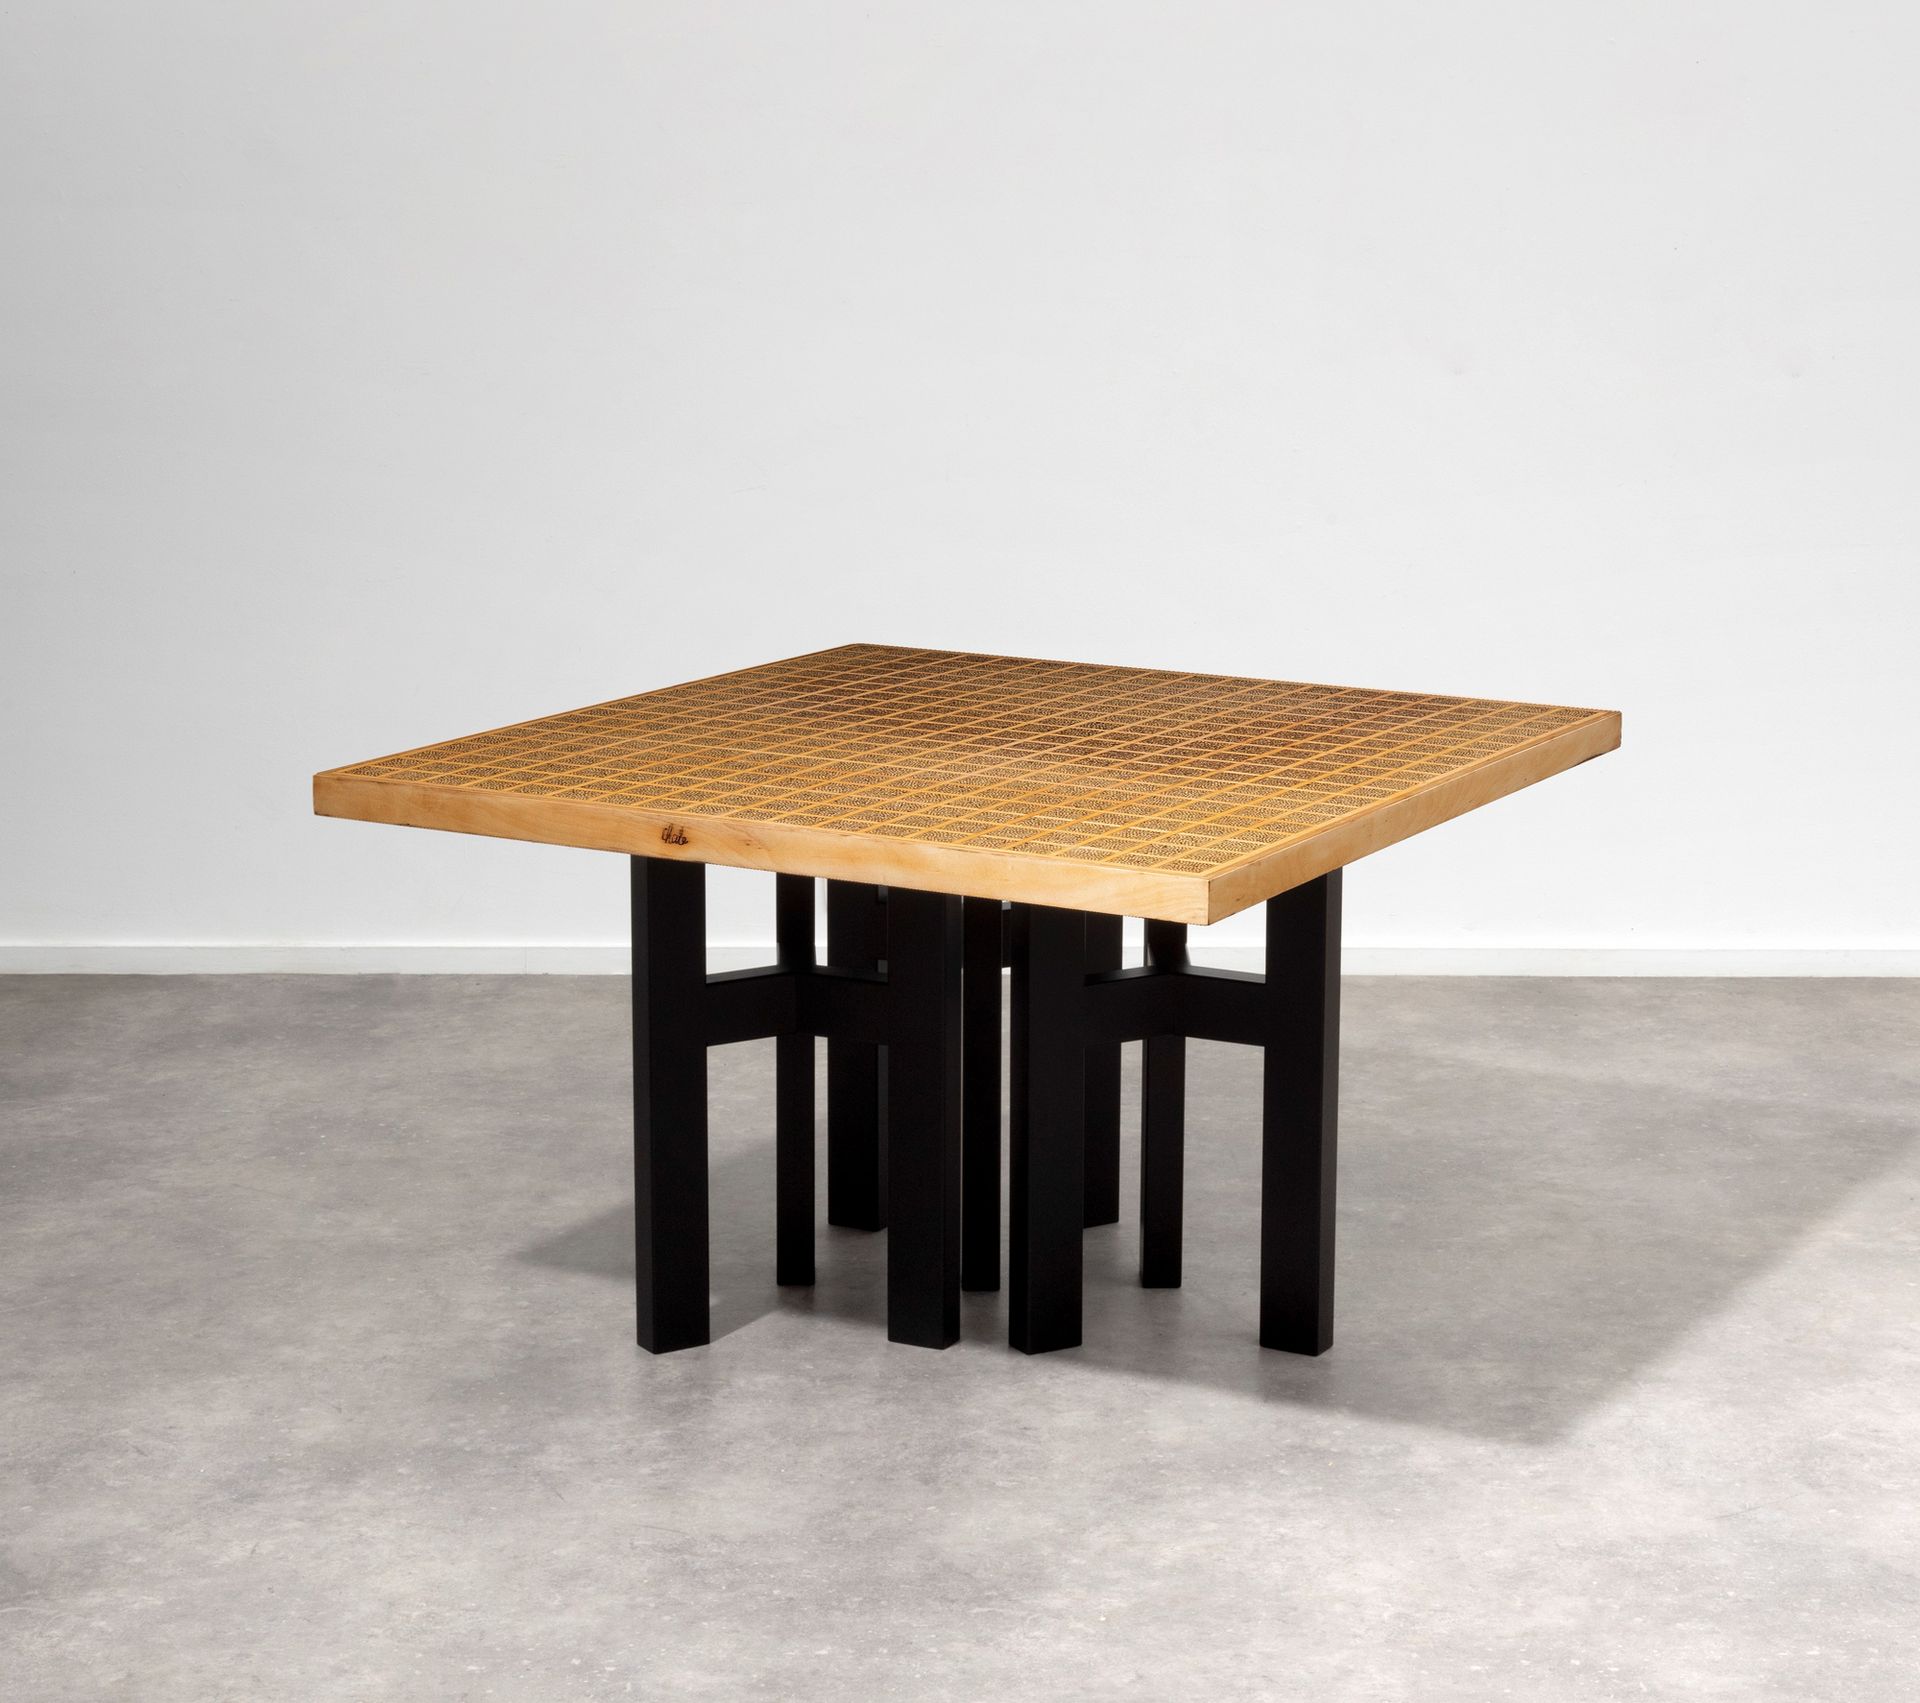 Ado CHALE (né en 1928) 镶嵌有花椒的格子桌，搁置在黑色漆钢的三个三脚架腿上。
签名。
将向买方提供一份证书。

画面上有一排排的猪舍，这些&hellip;